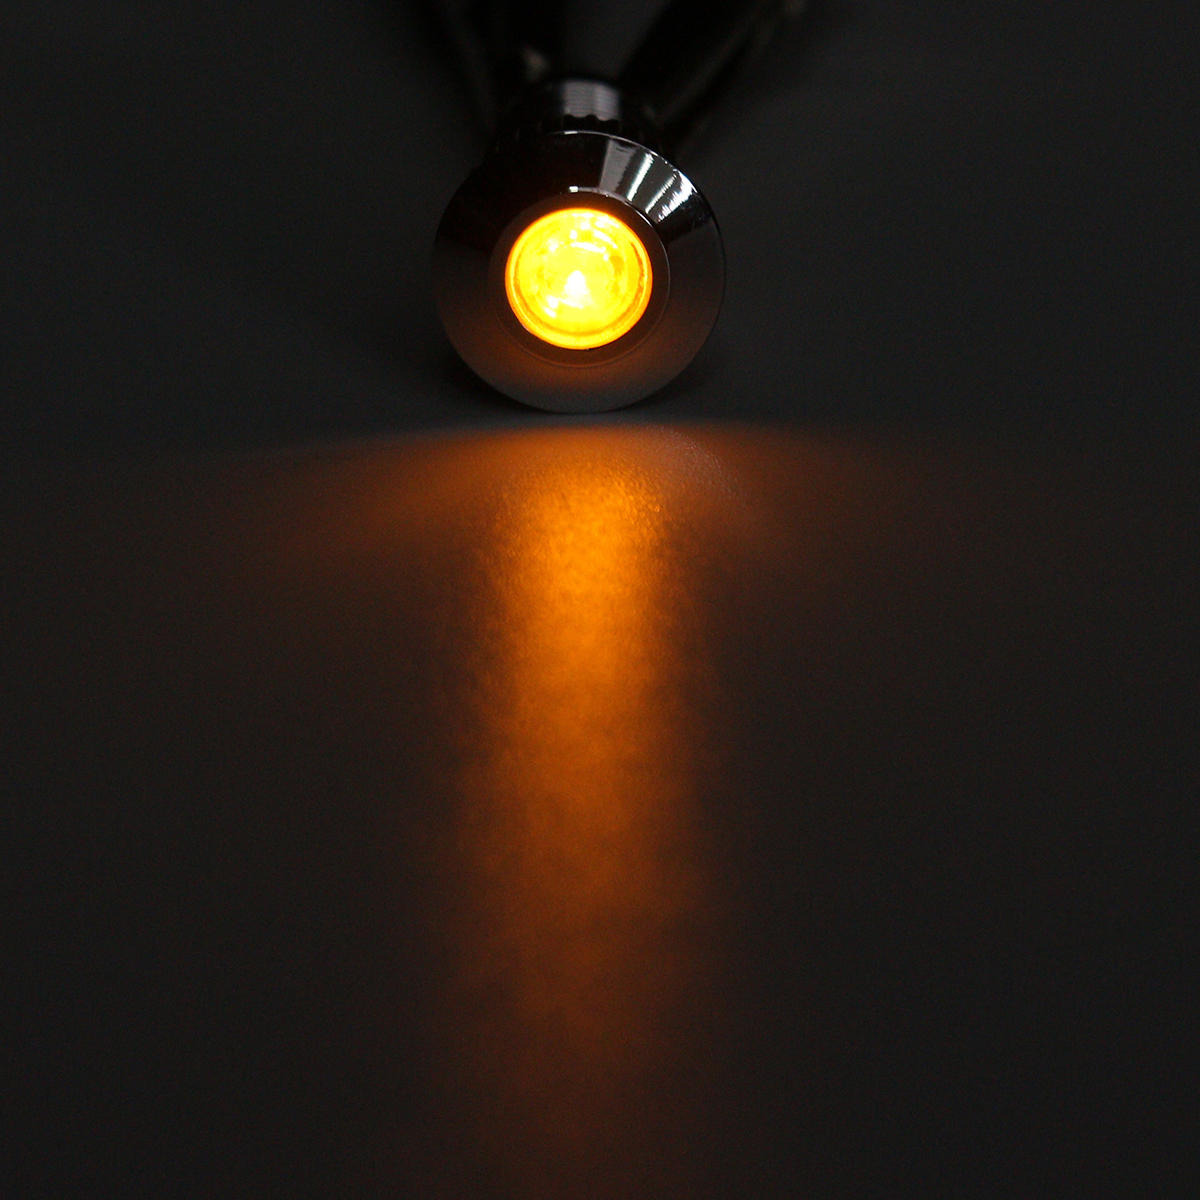 12v metaal 8mm led-lampje dash lamp waarschuwingslampje waterdicht